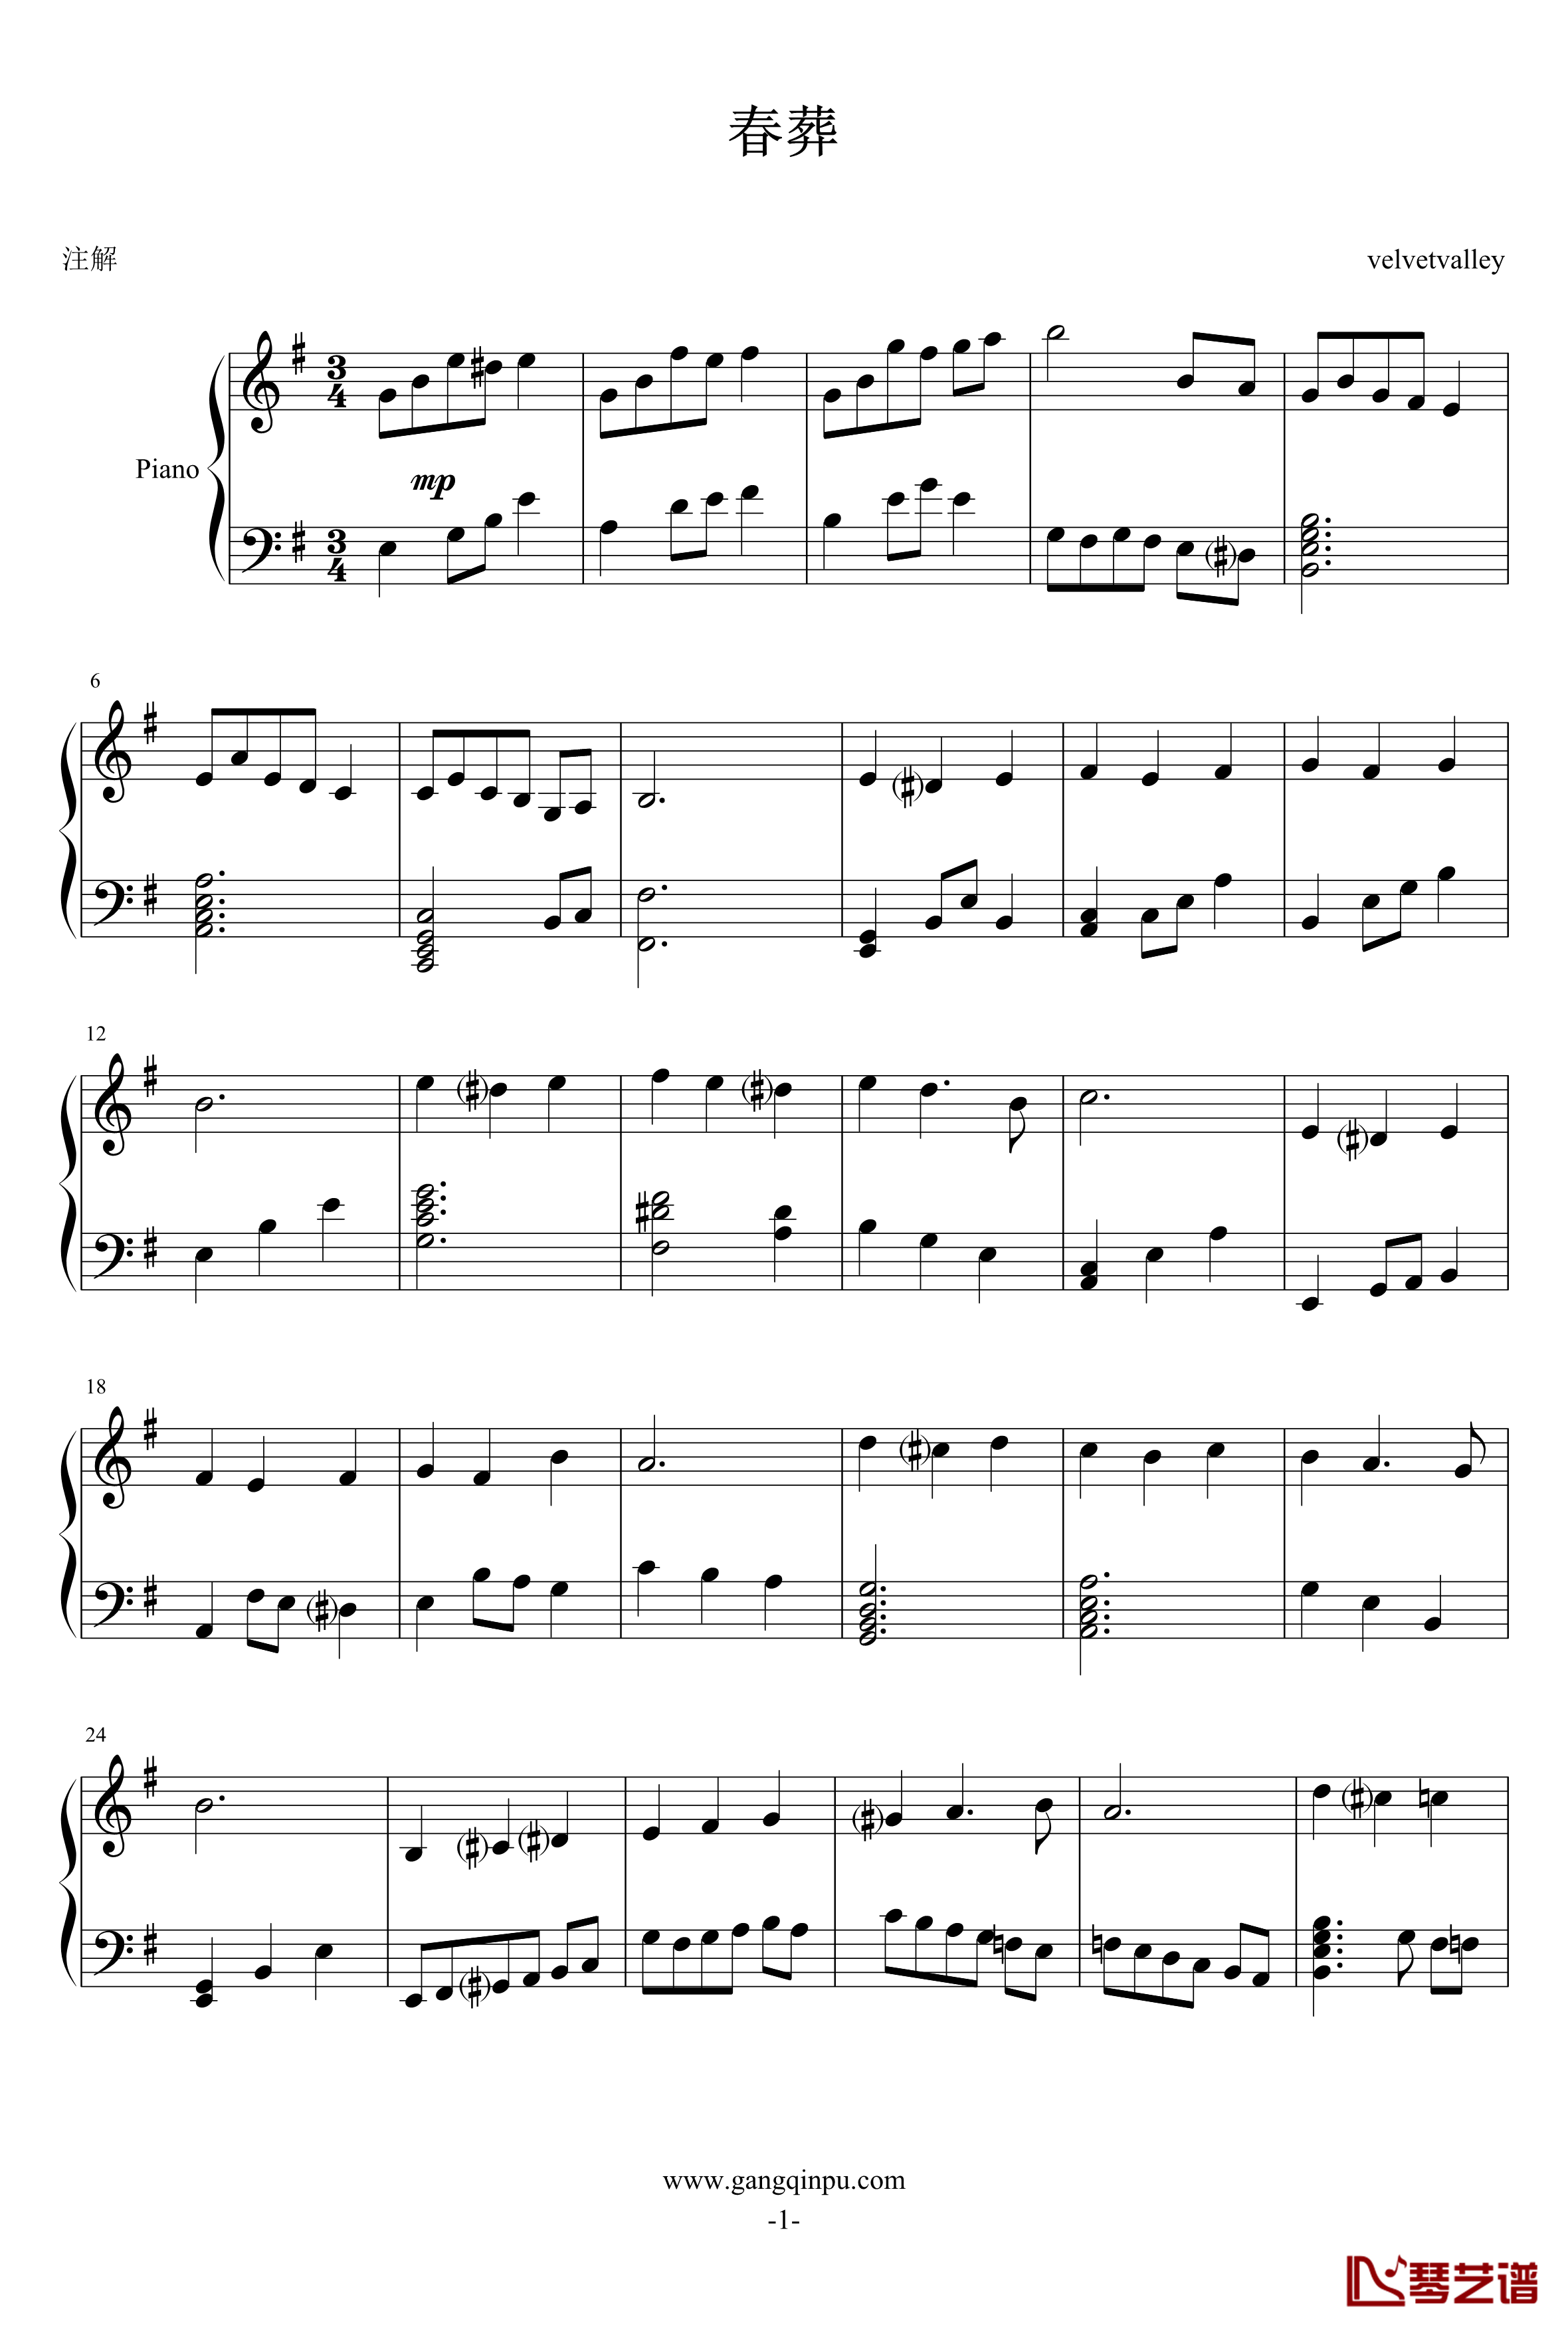 春葬钢琴谱-velvetvalley1